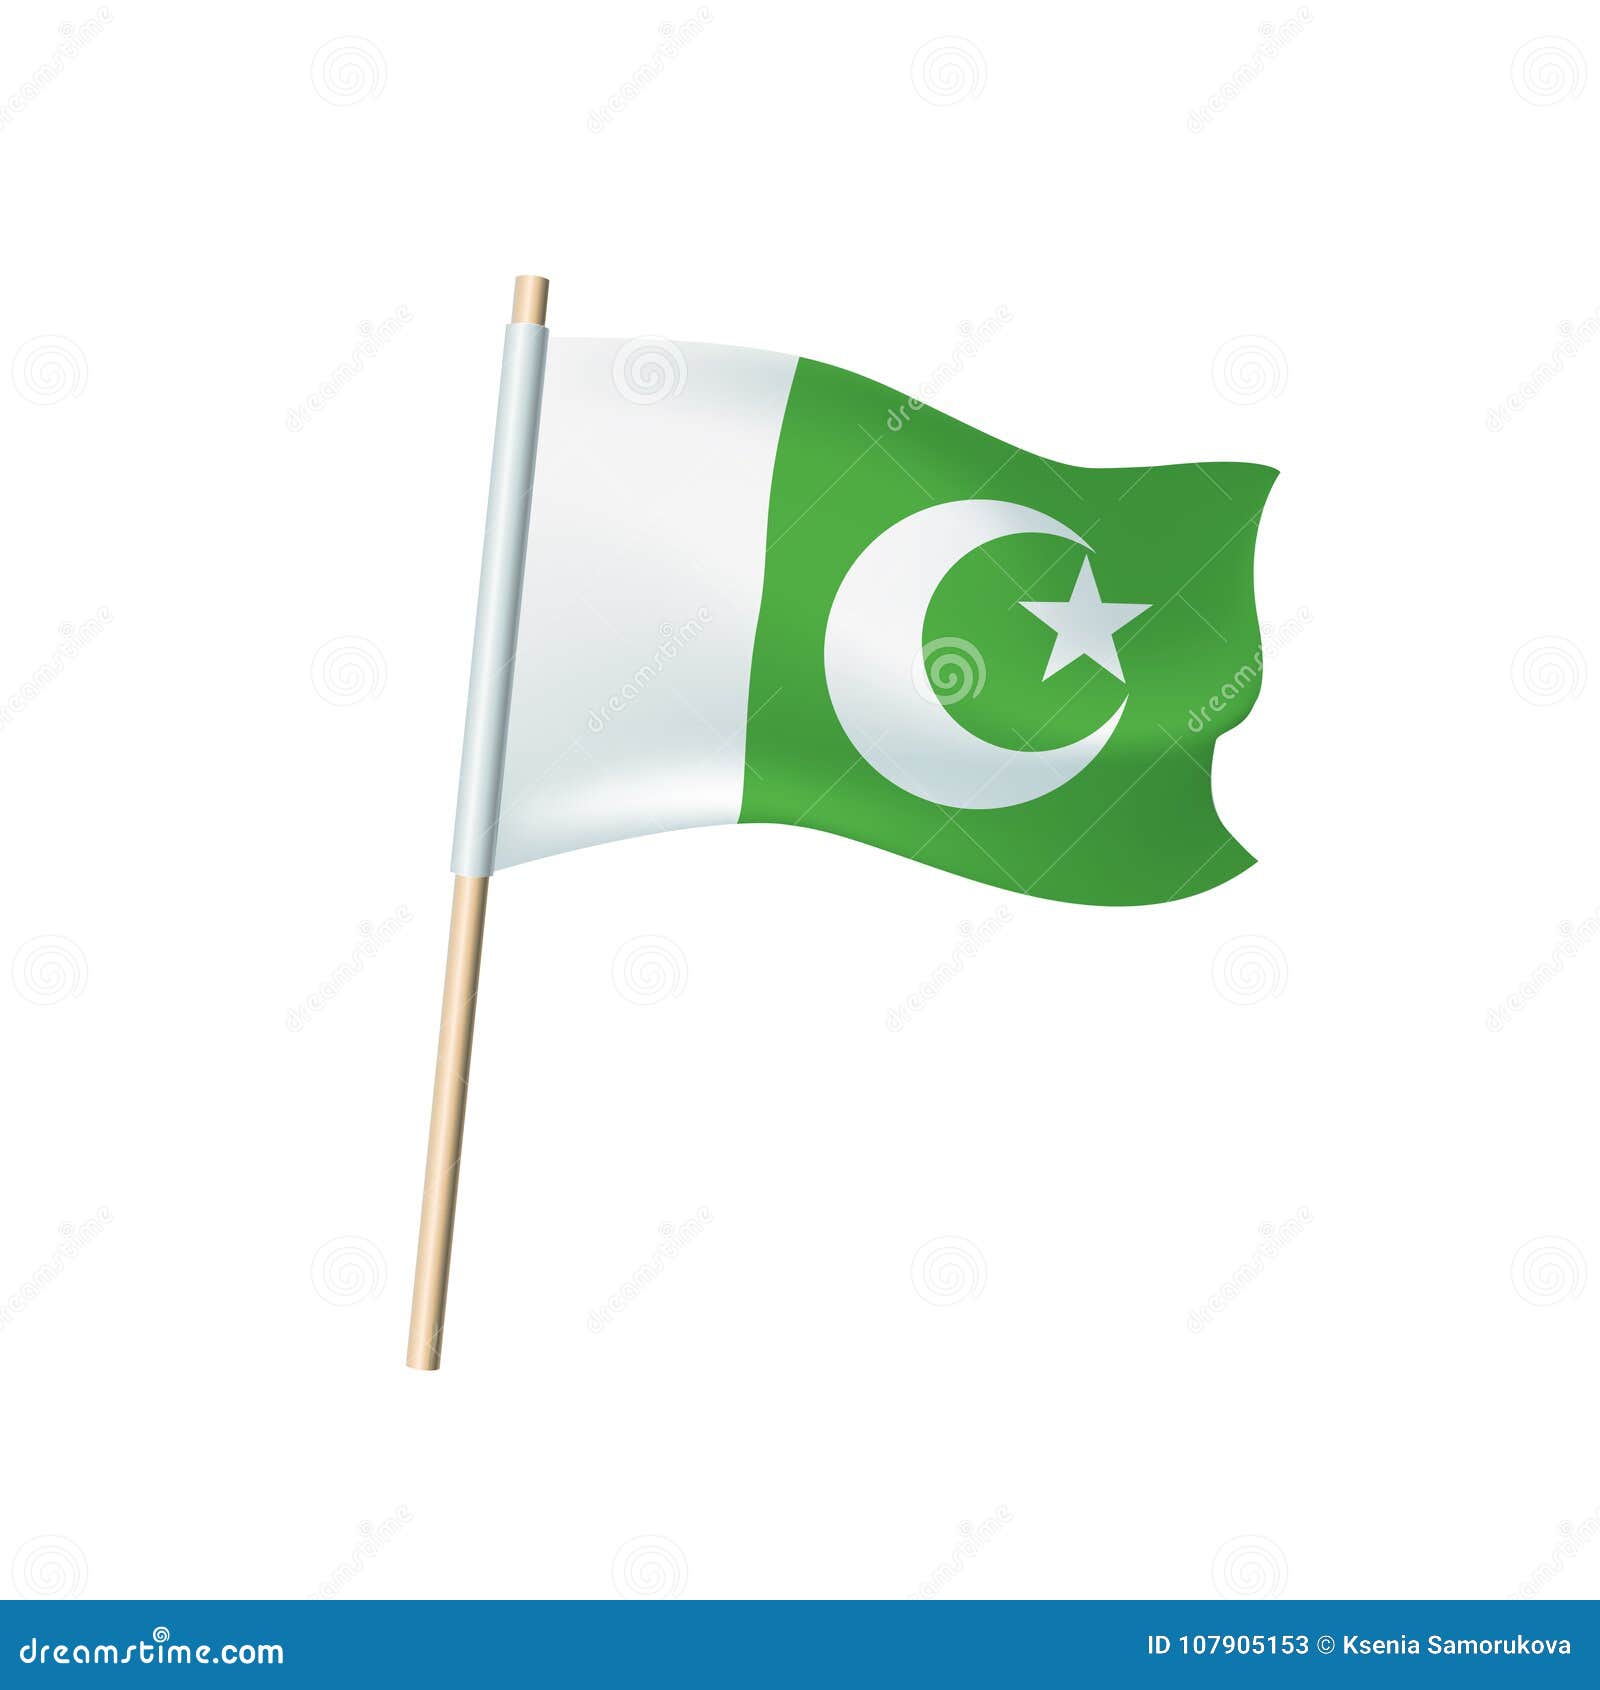 Зелено белый флаг с месяцем. Зелёный флаг с полумесяцем и звездой. Зеленый флаг. Бело зеленый флаг. Зелено белый флаг с полумесяцем.